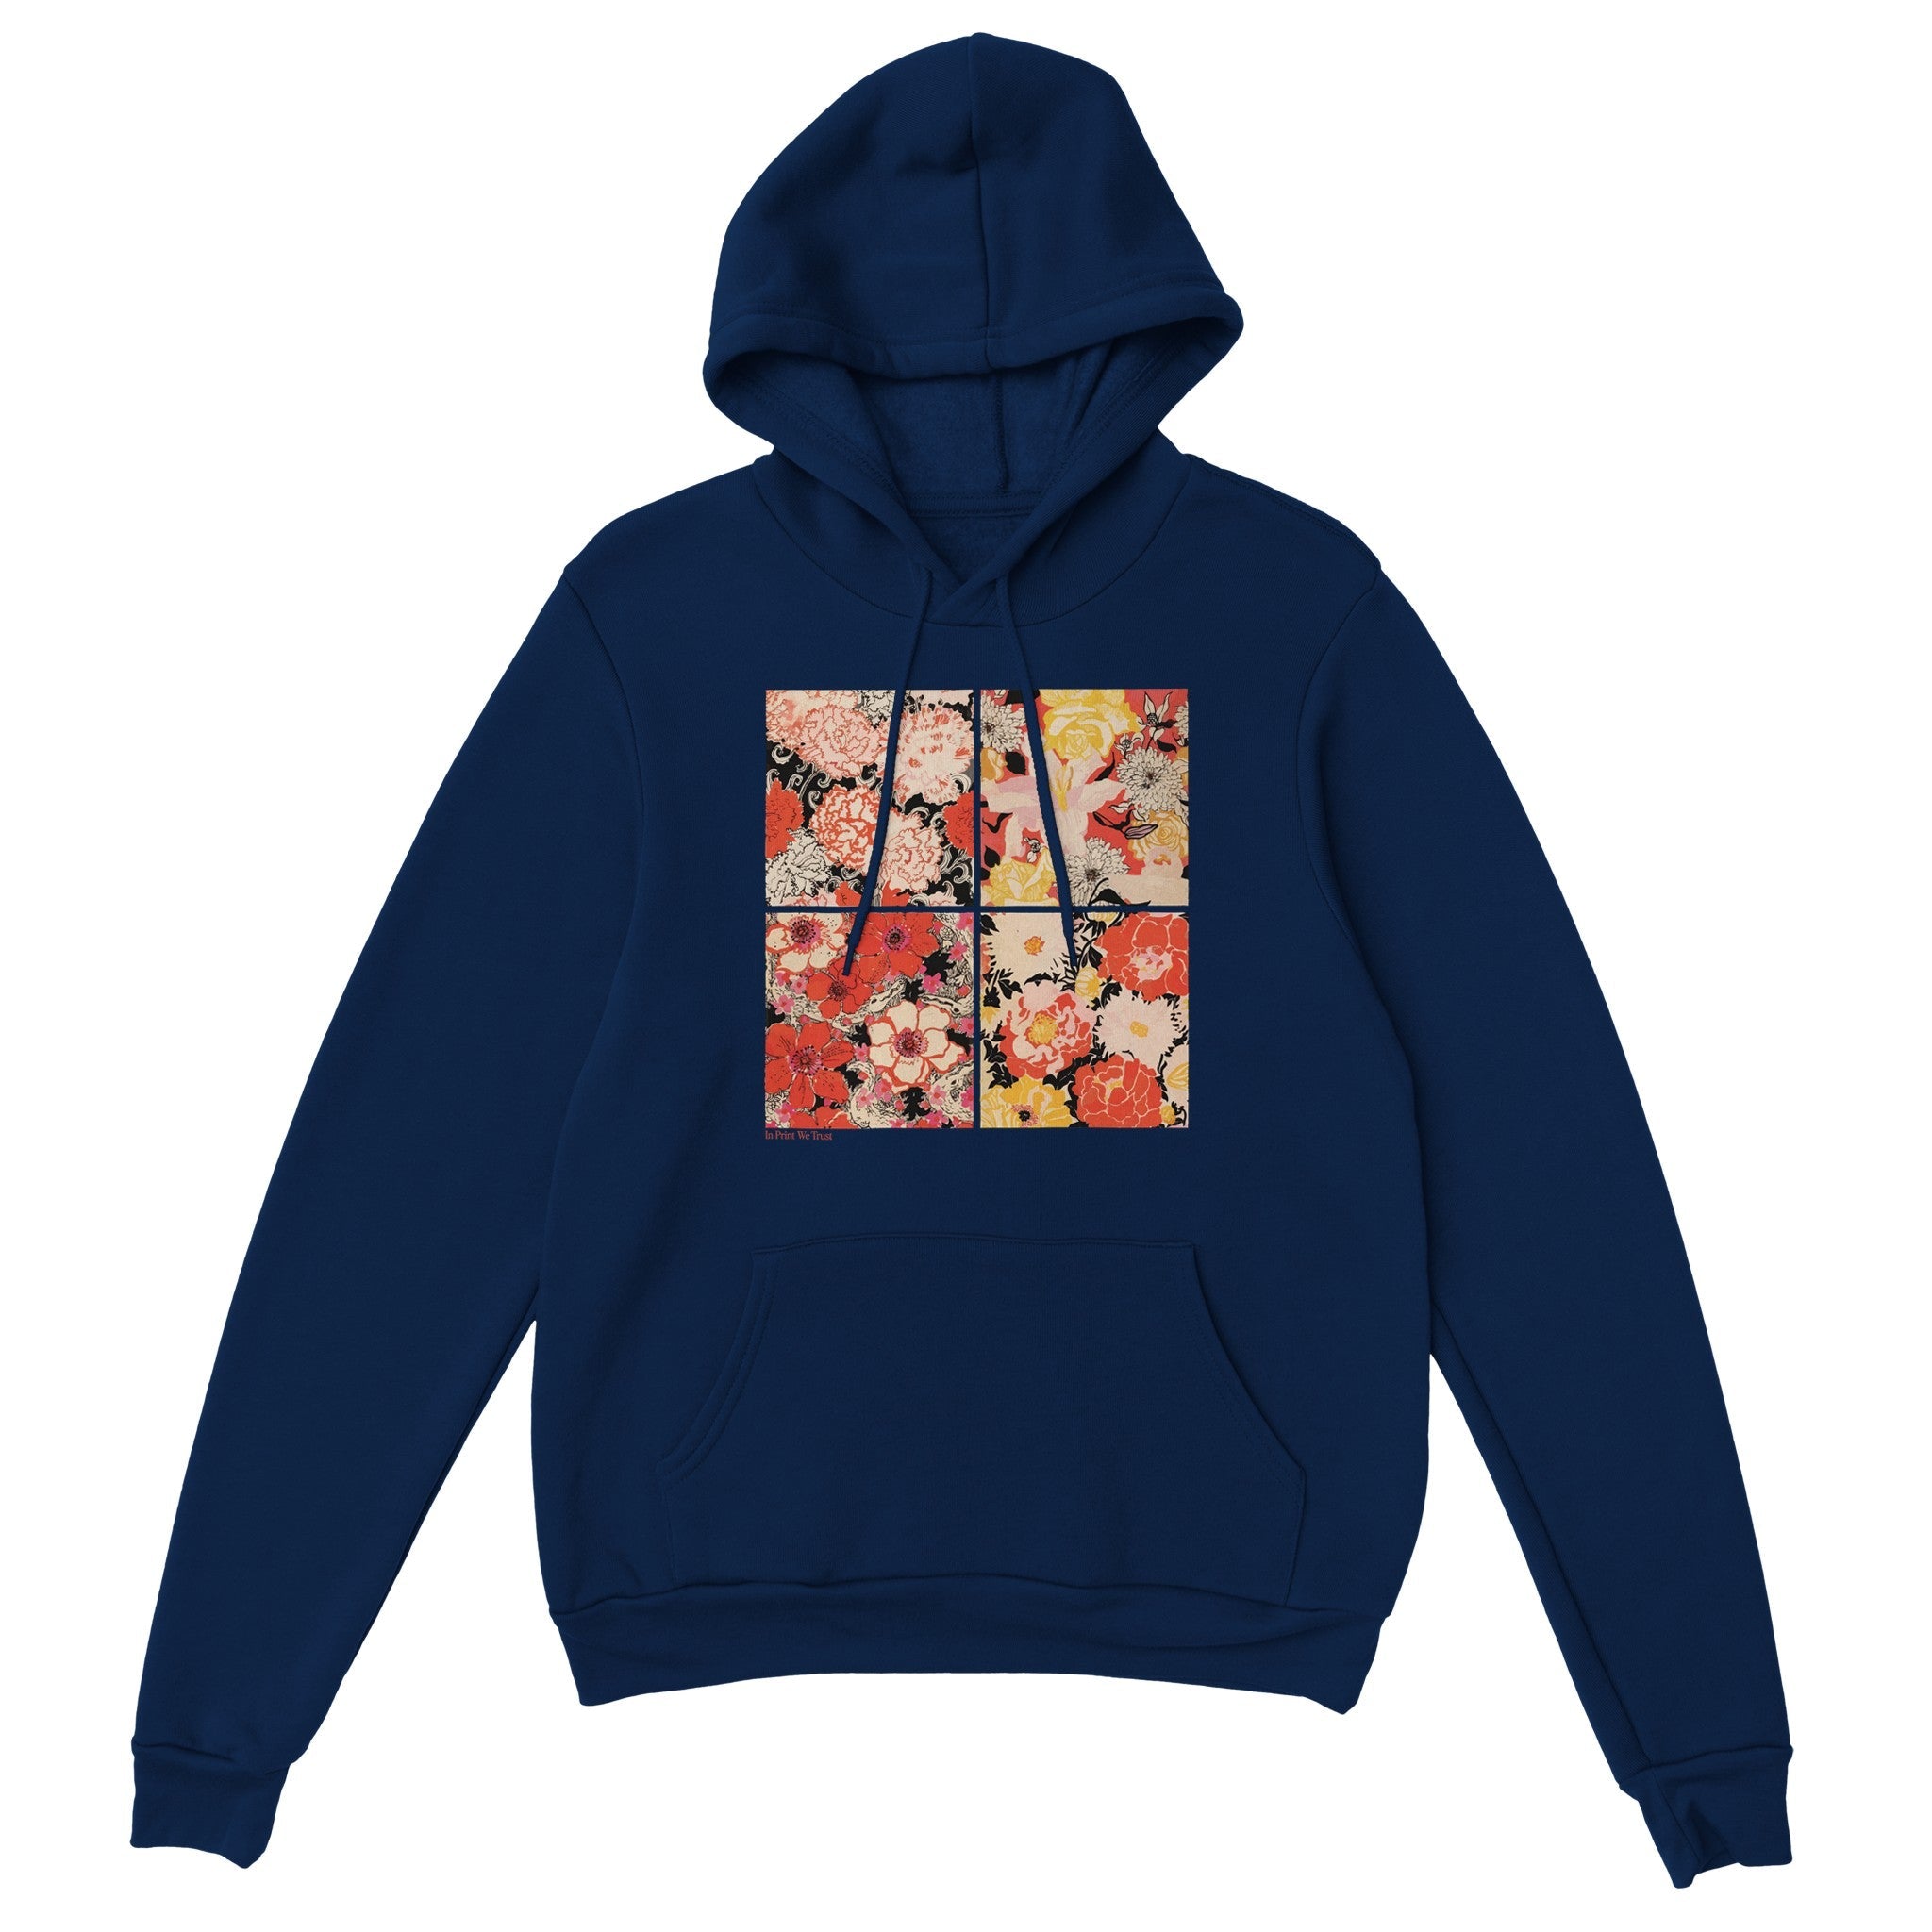 'Flower Power' hoodie - In Print We Trust